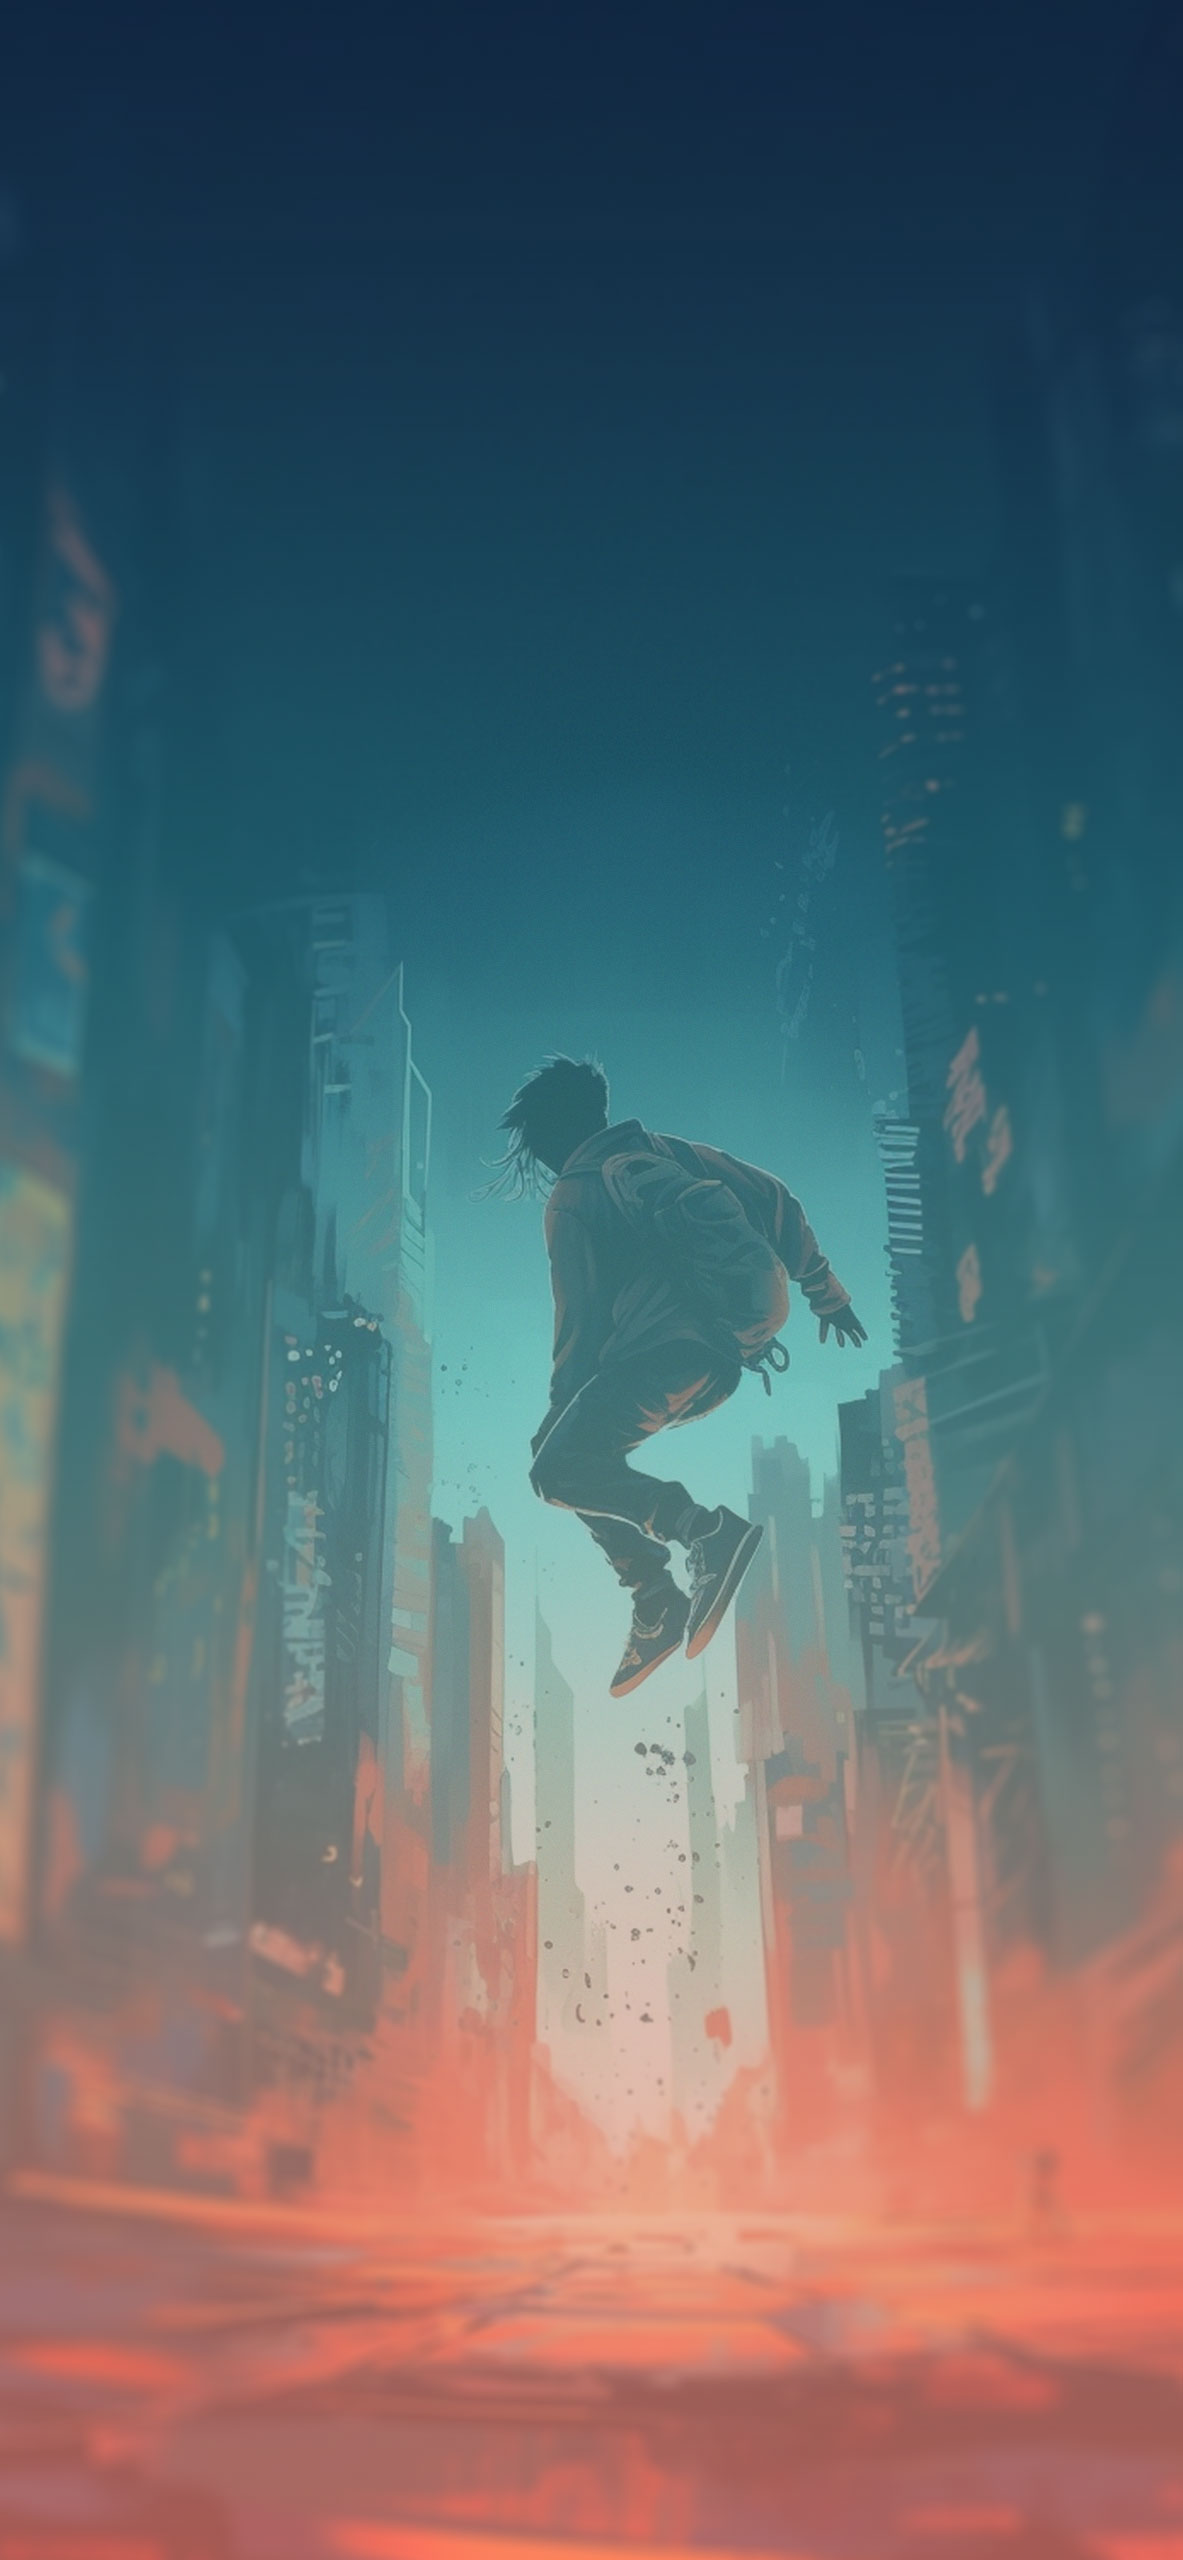 Jump Guy & City Art Wallpaper Cyberpunk City Wallpaper for iPh